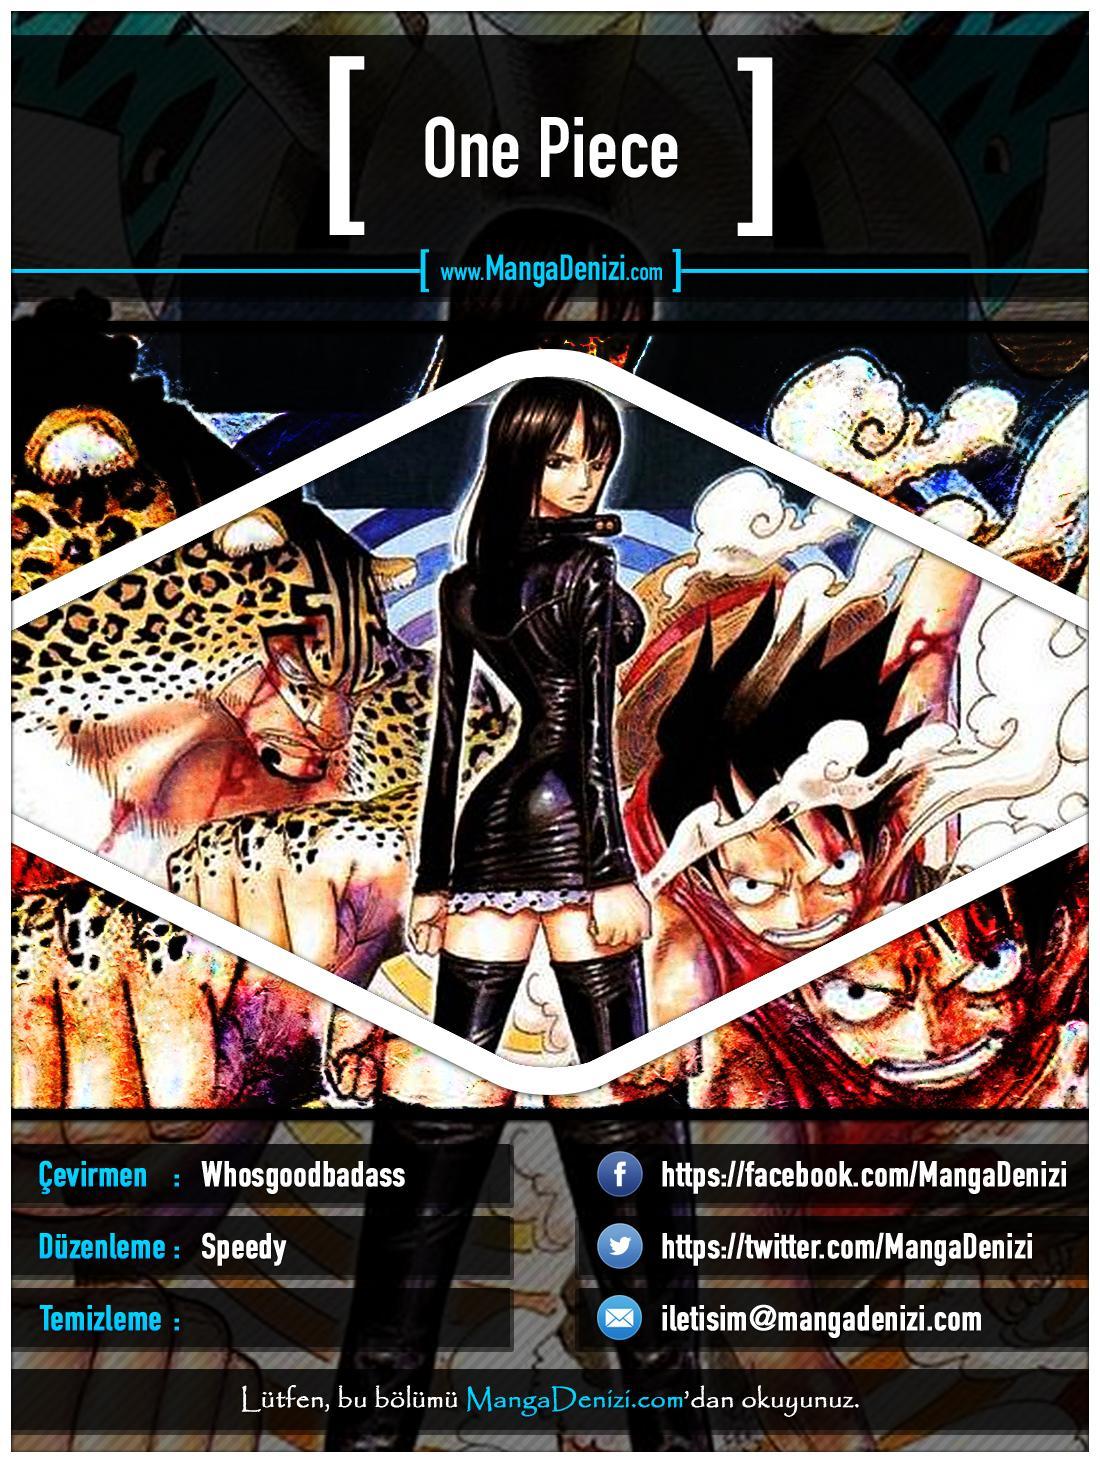 One Piece [Renkli] mangasının 0366 bölümünün 1. sayfasını okuyorsunuz.